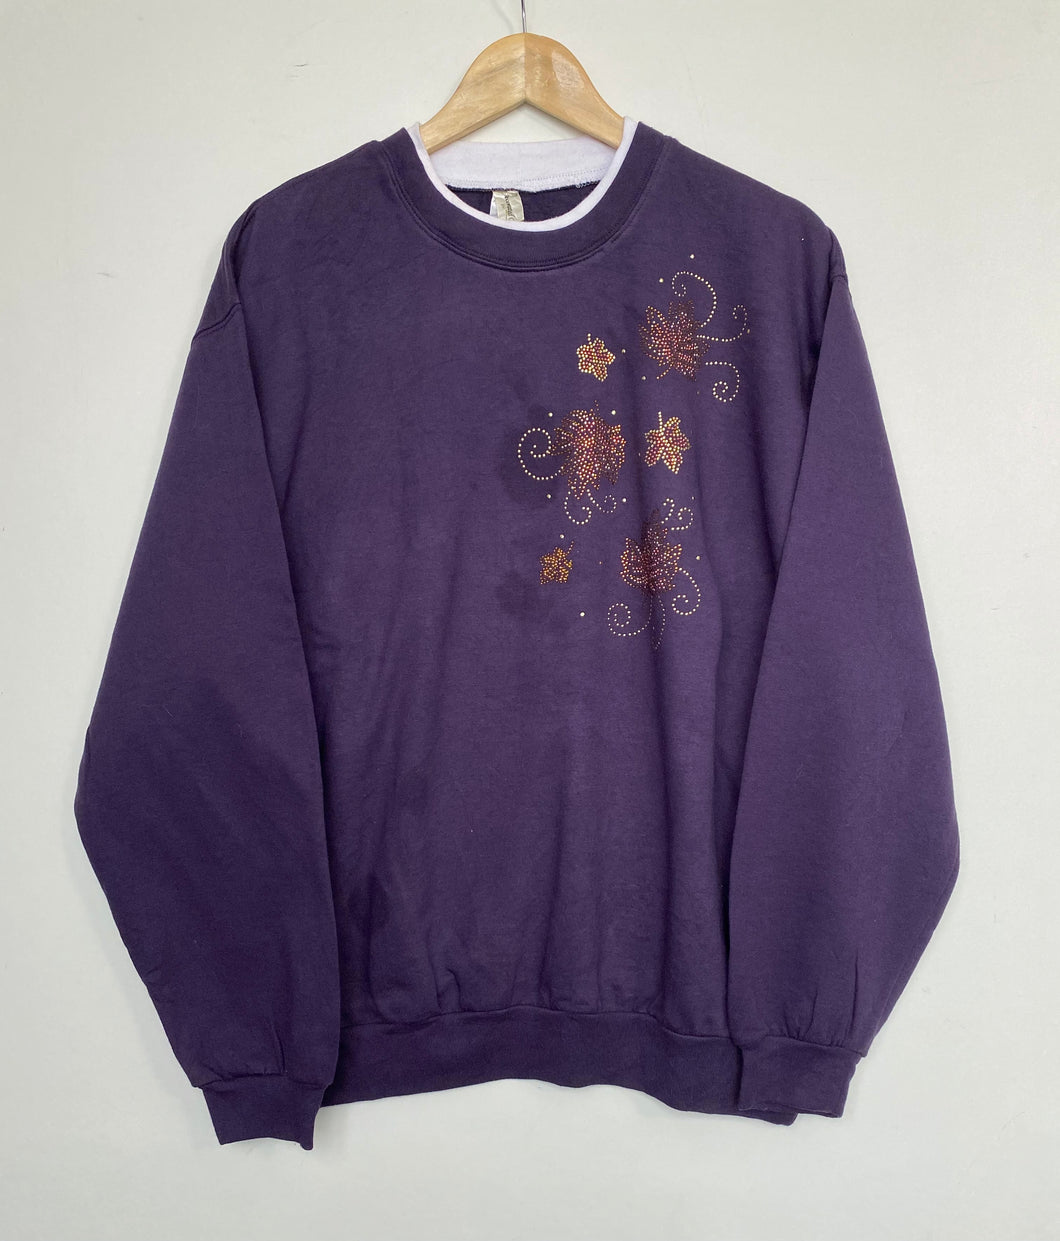 Printed ‘Leaf’ sweatshirt (XL)